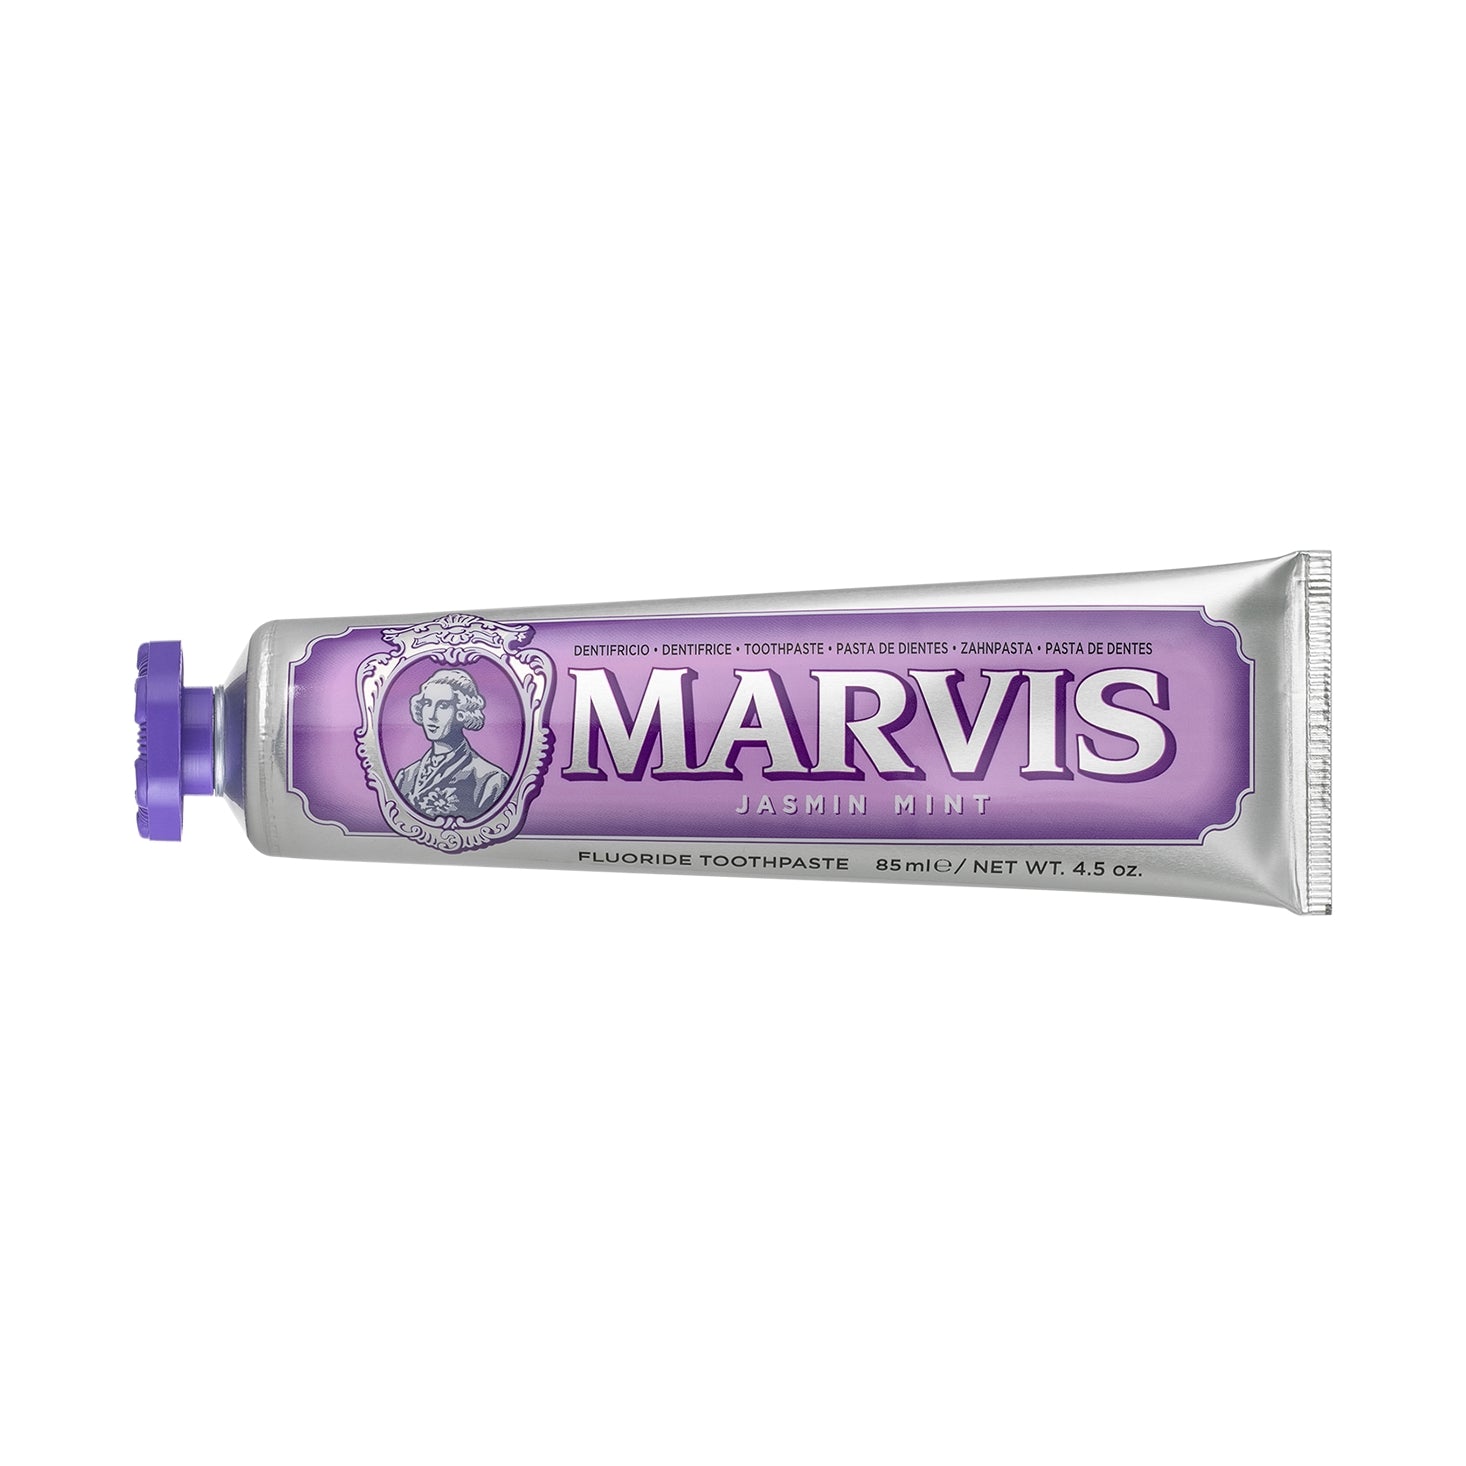 Marvis Jasmine Mint Toohtpaste 85ml